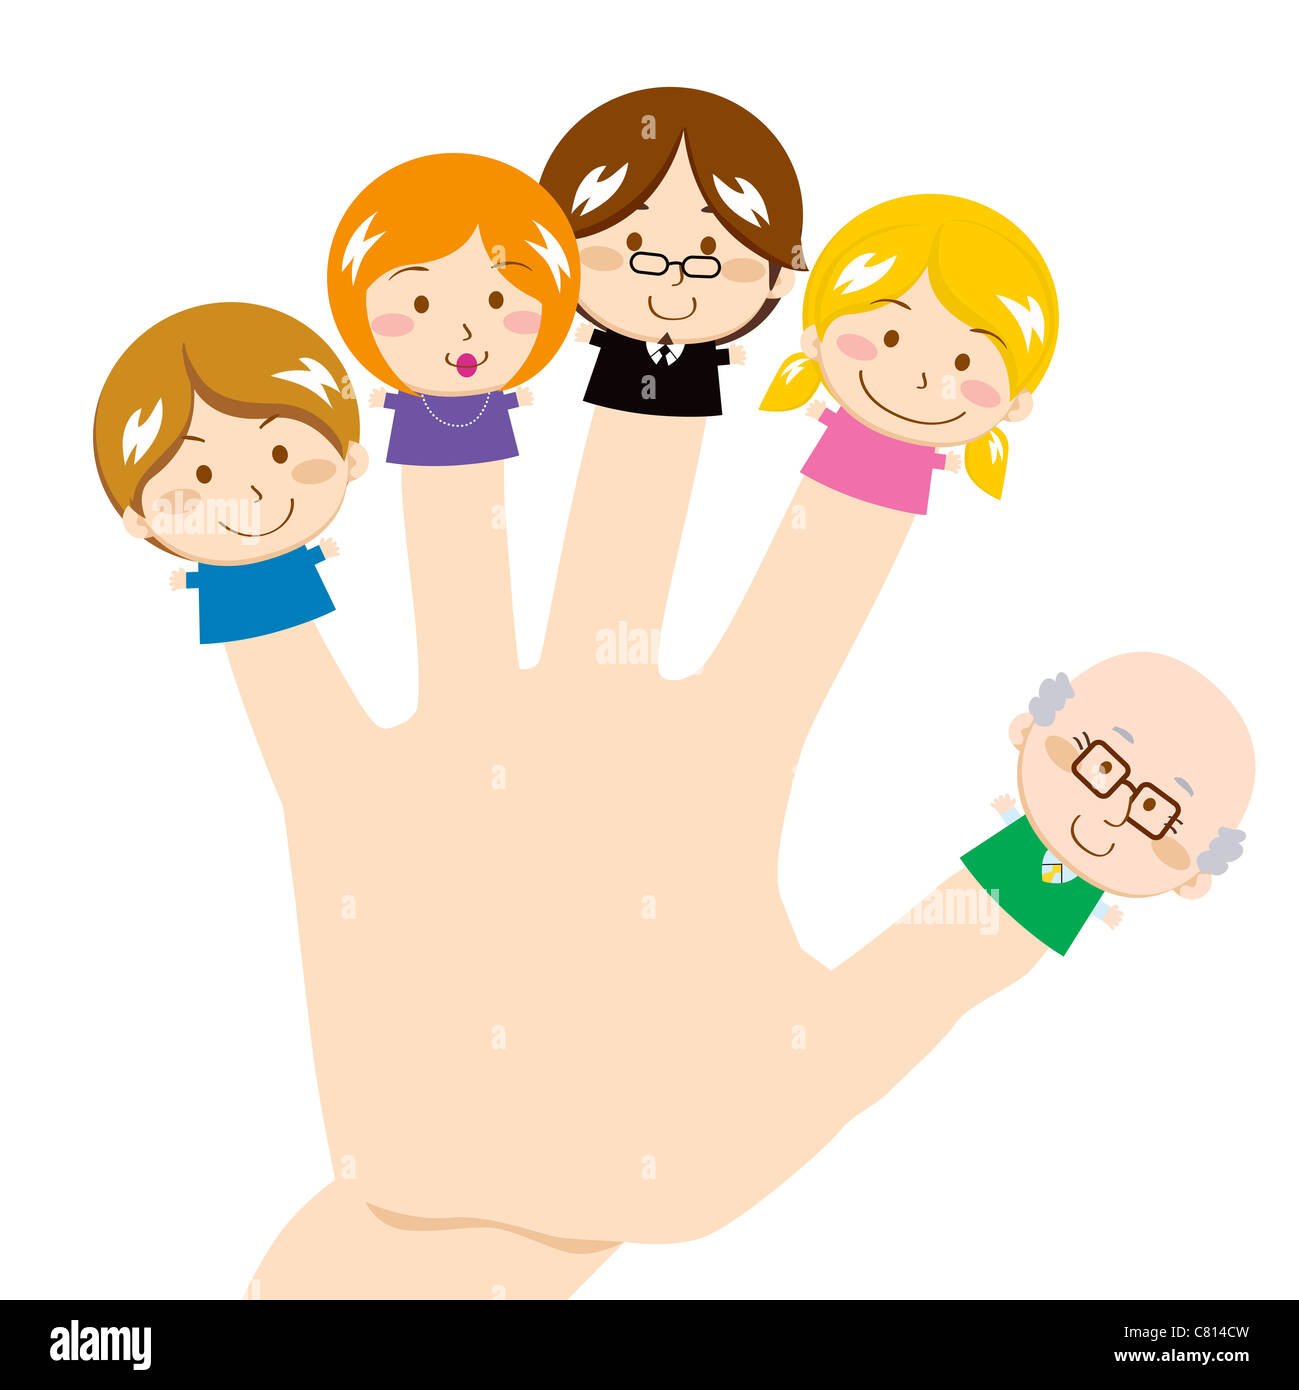 Шаблоны рук семьи. Семья на ладошке. Семья с ребенком на руках. Ладошка с изображением семьи. Семья на ладошке рисунок.